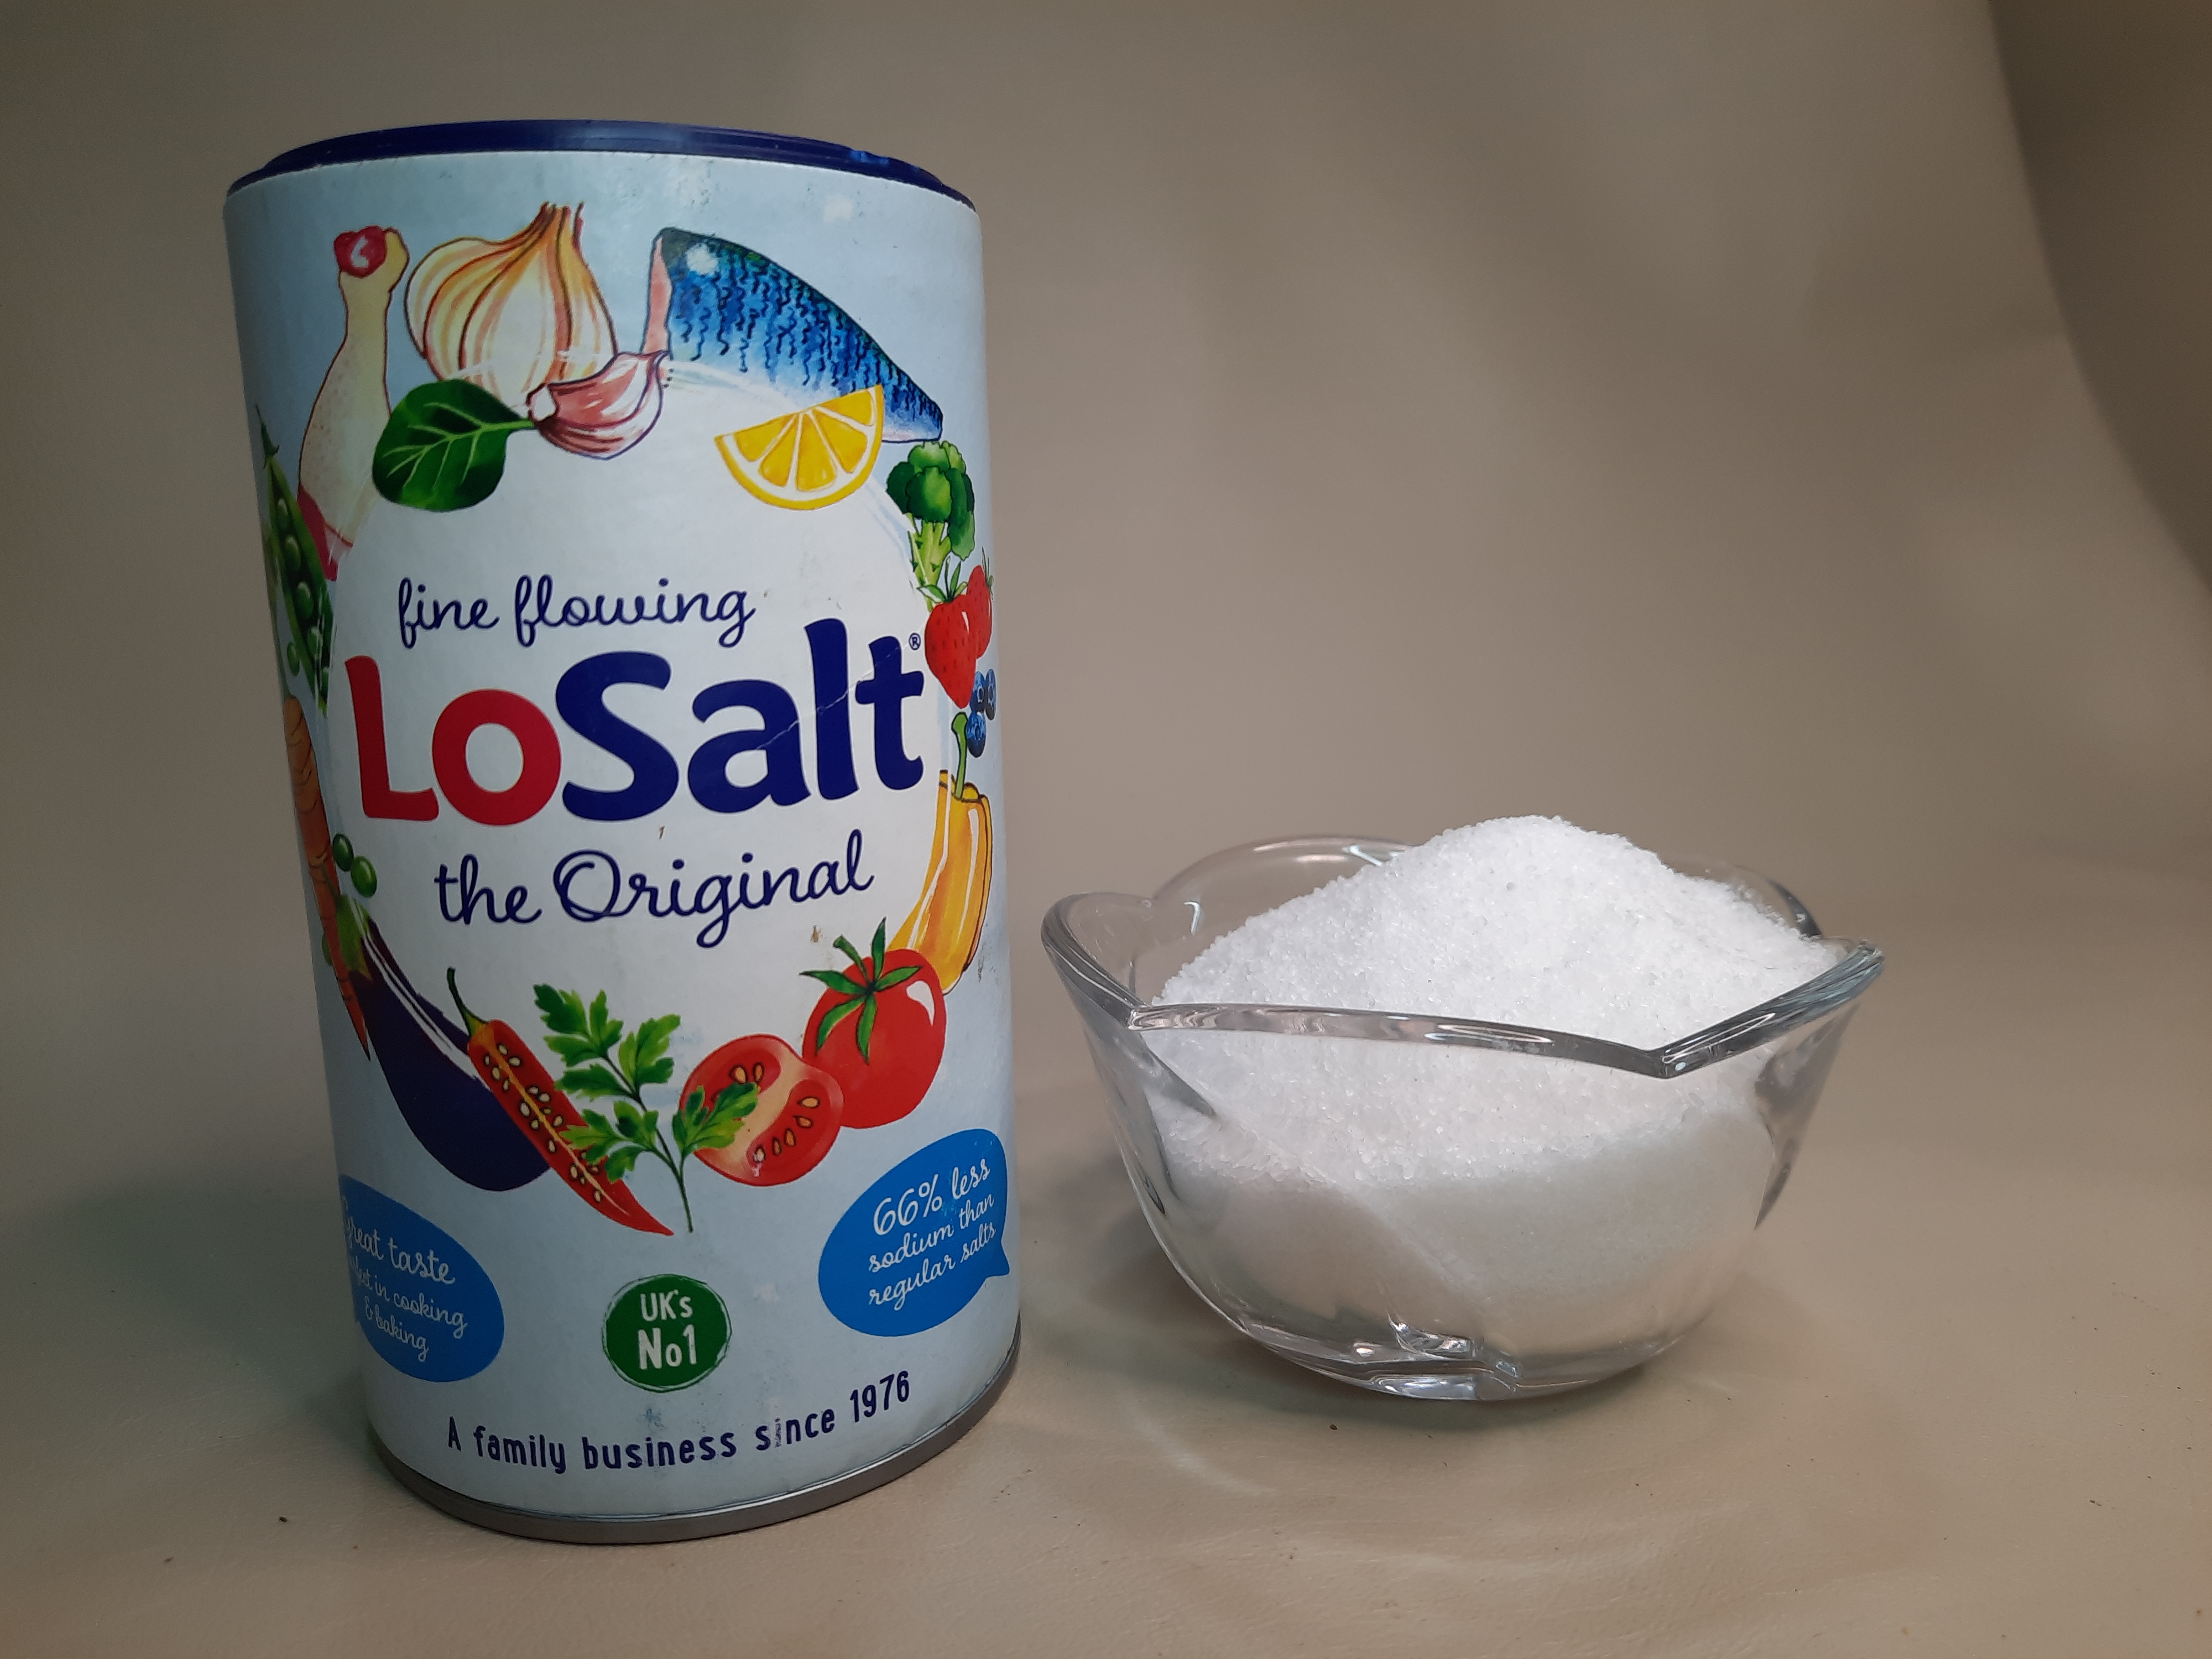 LOSALT (POTASSIUM SALT)